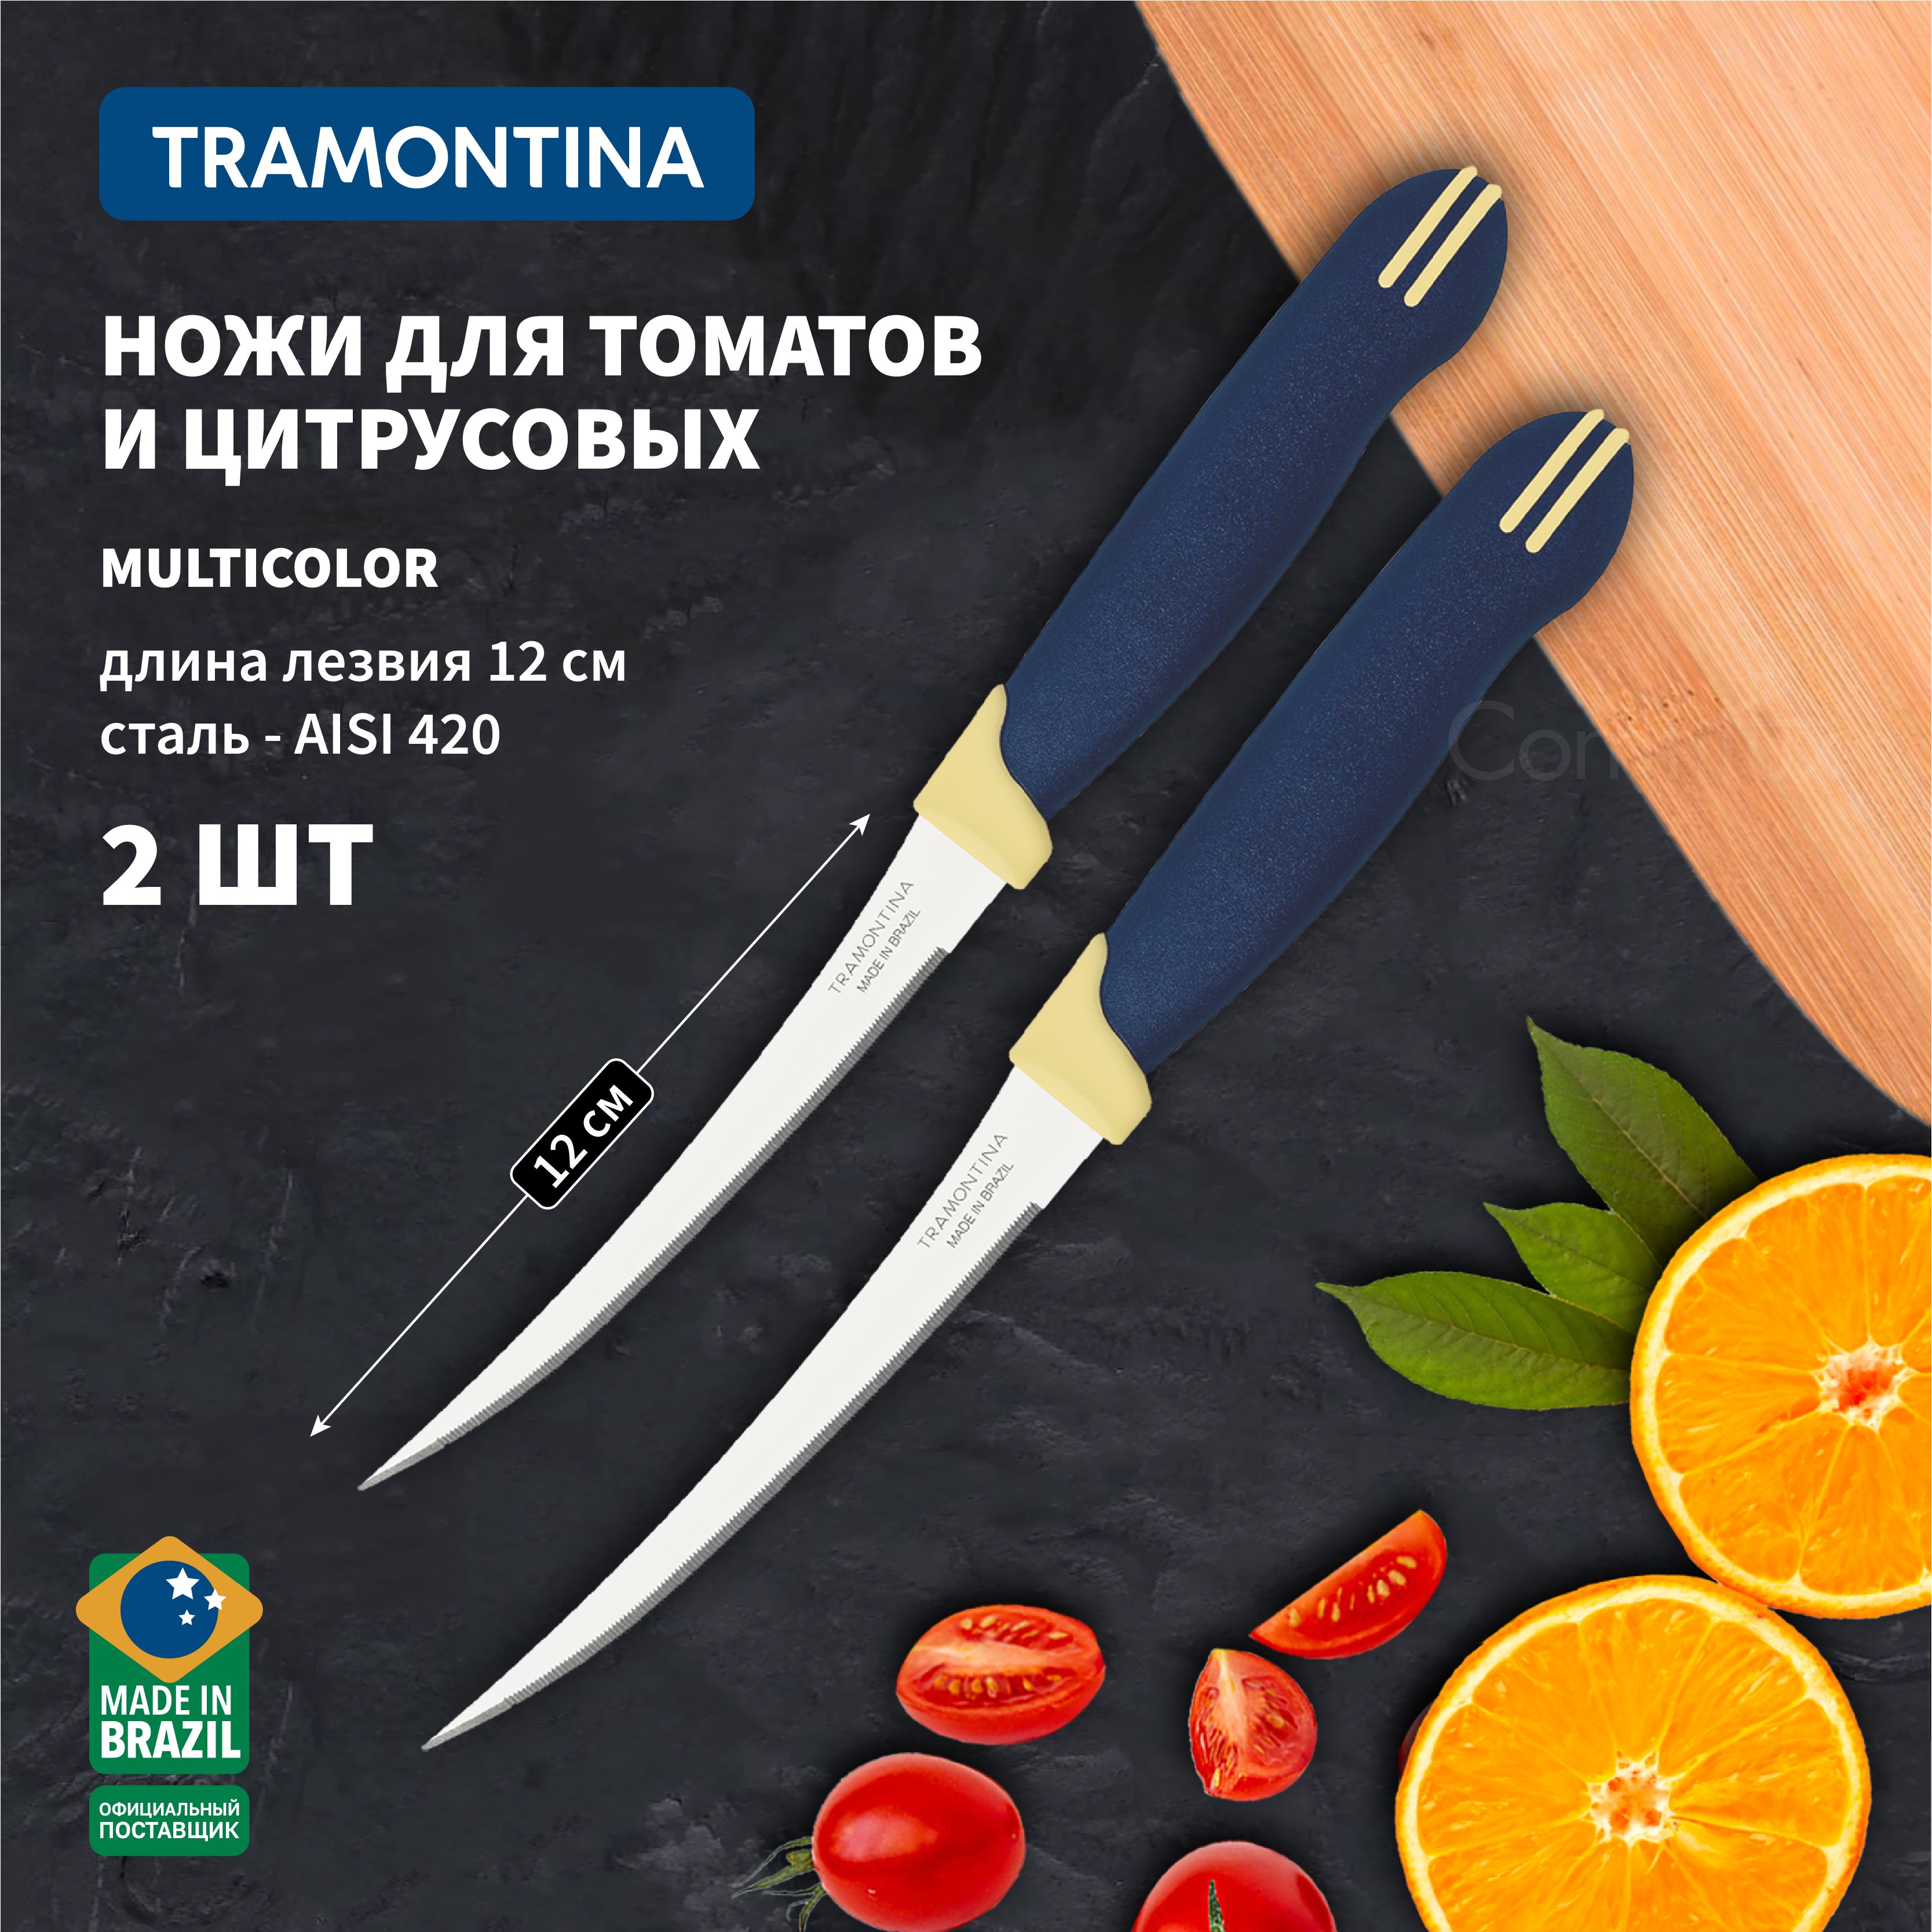 Нож для томатов. Нож для помидоров. Нож для томатов Tramontina. Помидорный нож Берхов.